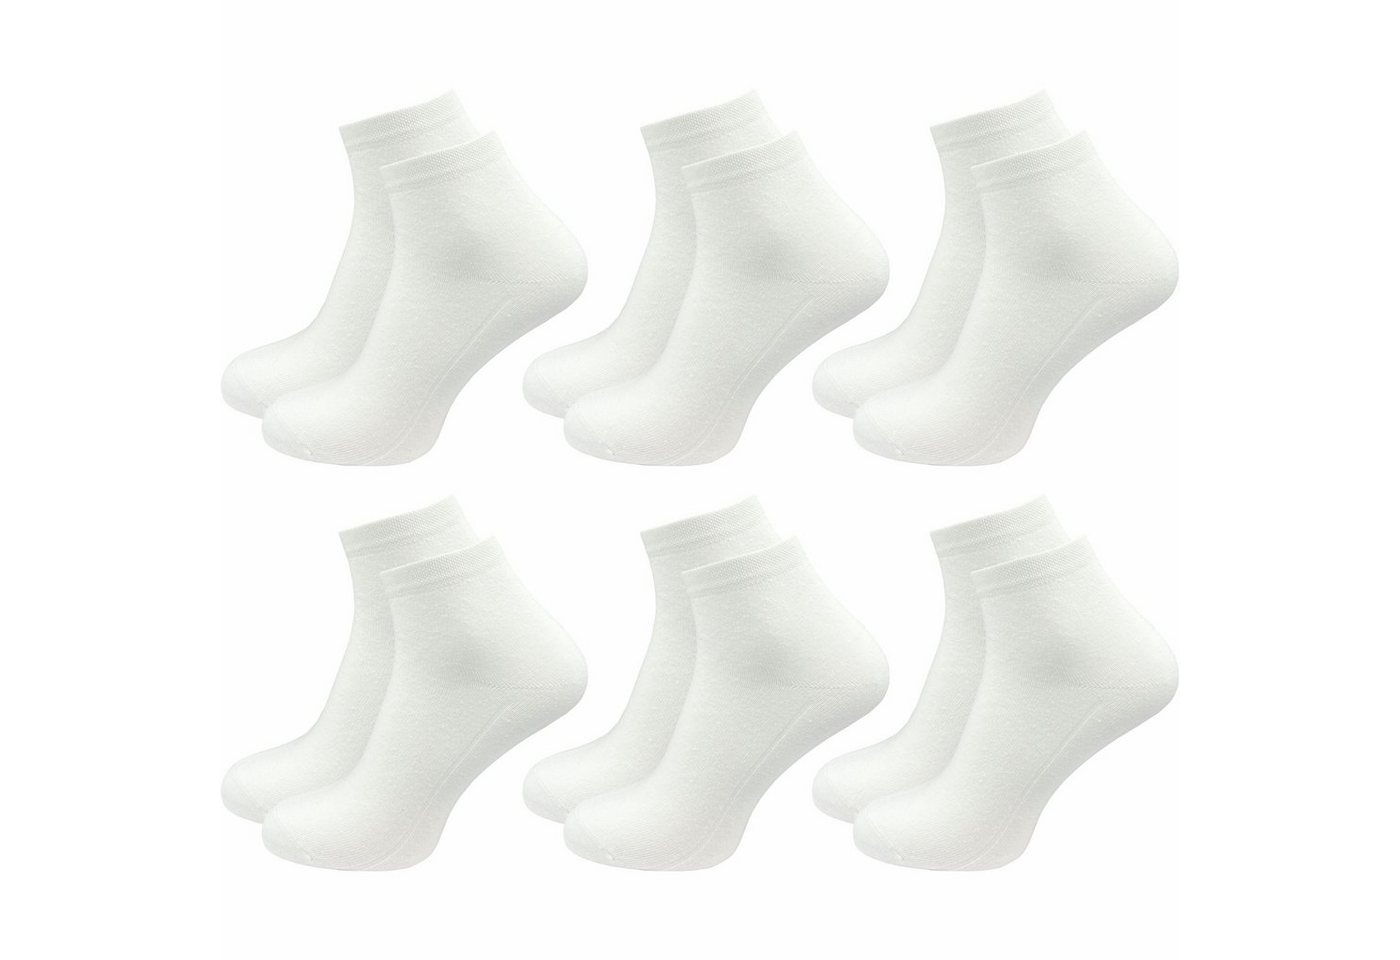 GAWILO Kurzsocken für Damen - Quartersocken in weiß und schwarz - ohne drückende Naht (6 Paar) Schaft etwas länger als bei einer Sneaker Socke, daher kein rutschen von GAWILO